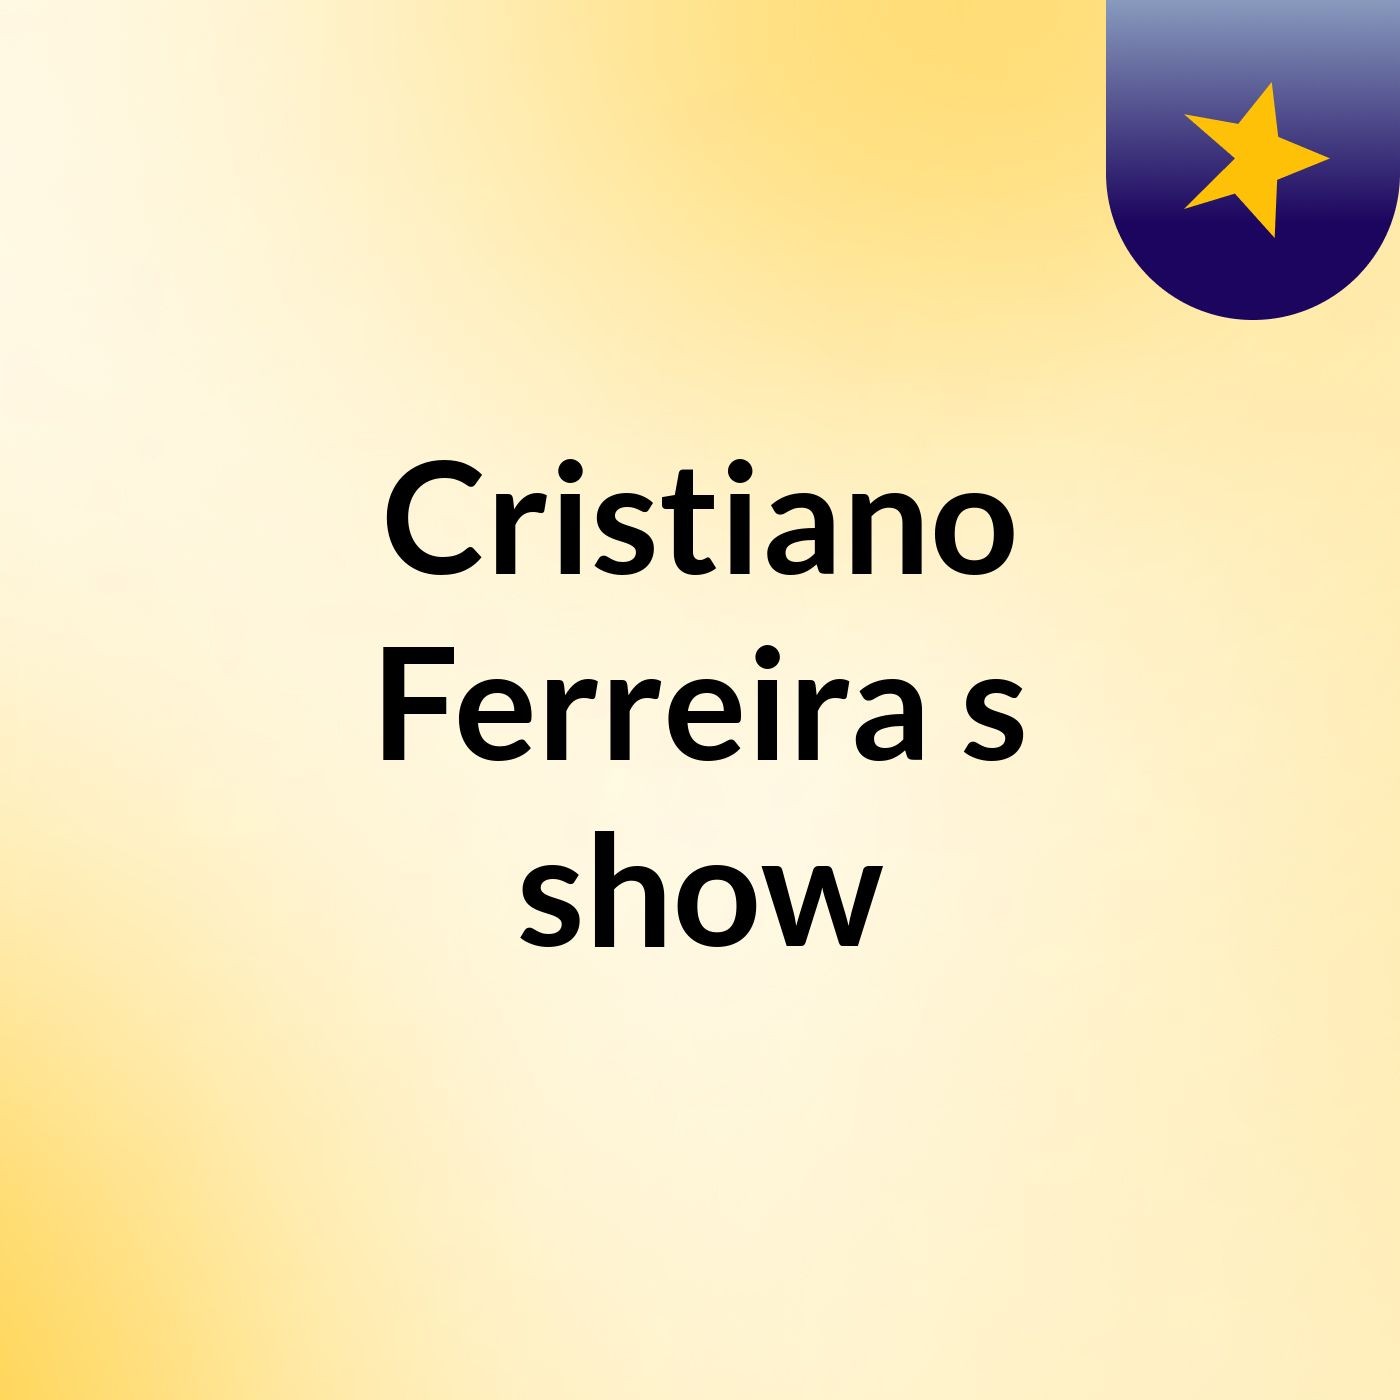 Cristiano Ferreira's show